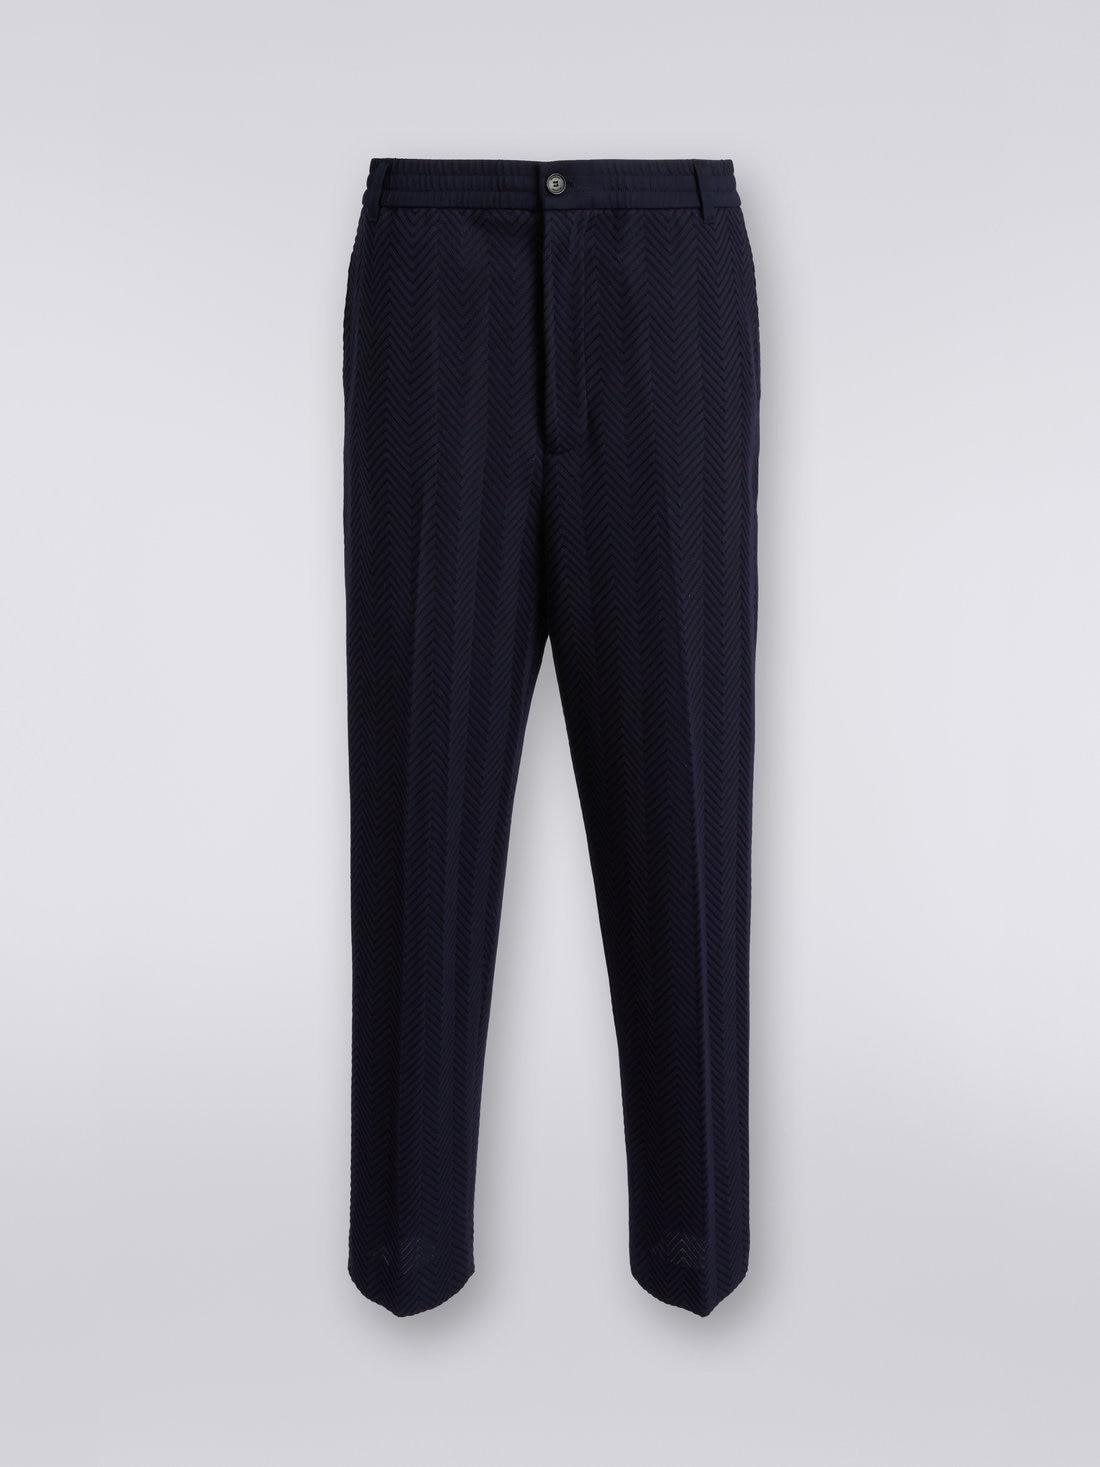 Pantalón clásico de algodón y viscosa de espigas de color liso, Rosa   - US23SI00BR00JC93838 - 0